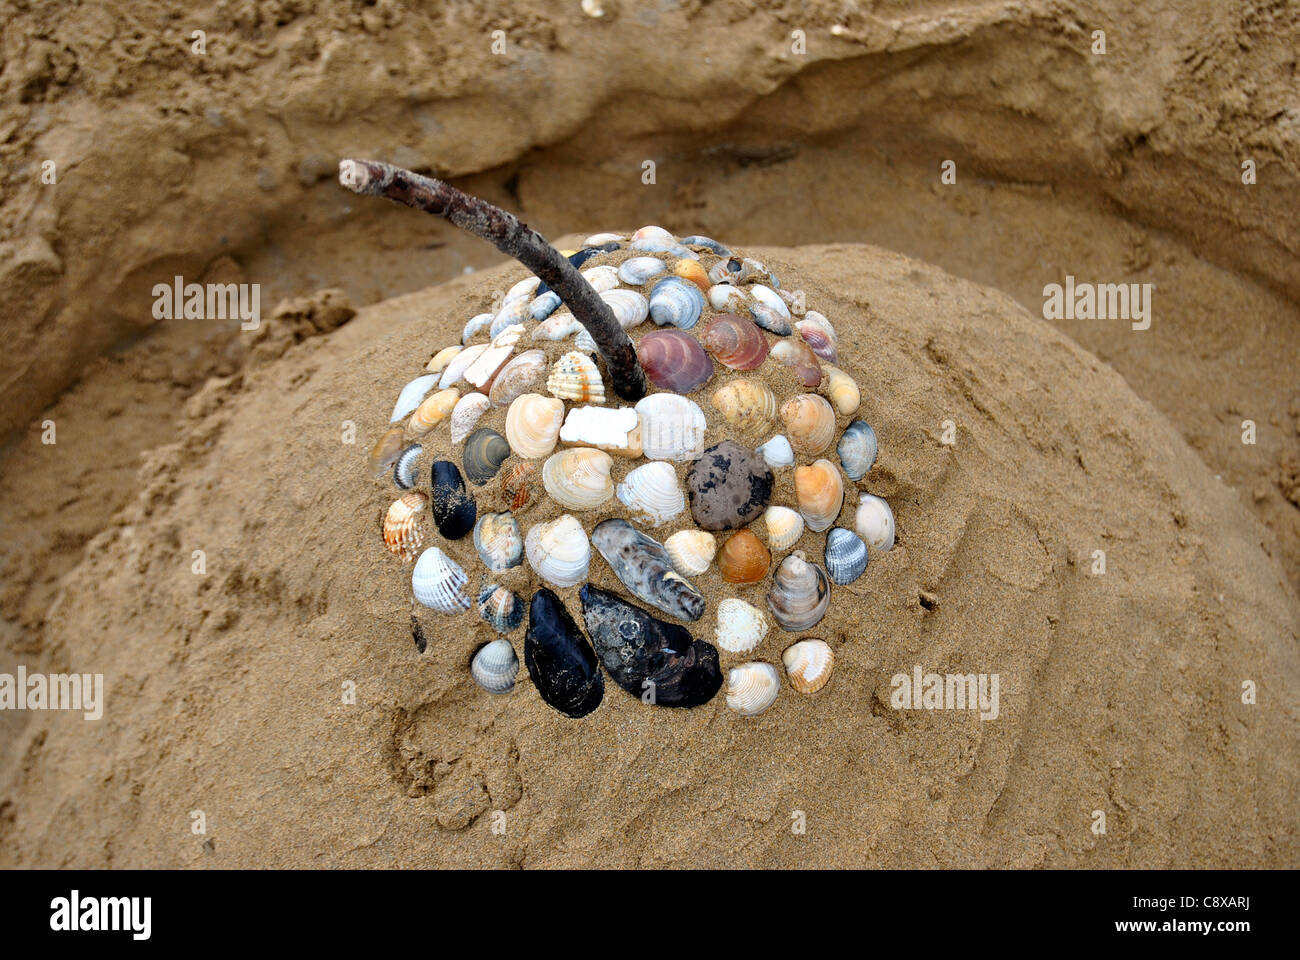 La spiaggia dei bambini giocattoli - Benne, spade e la pala sulla sabbia in una giornata di sole Foto Stock